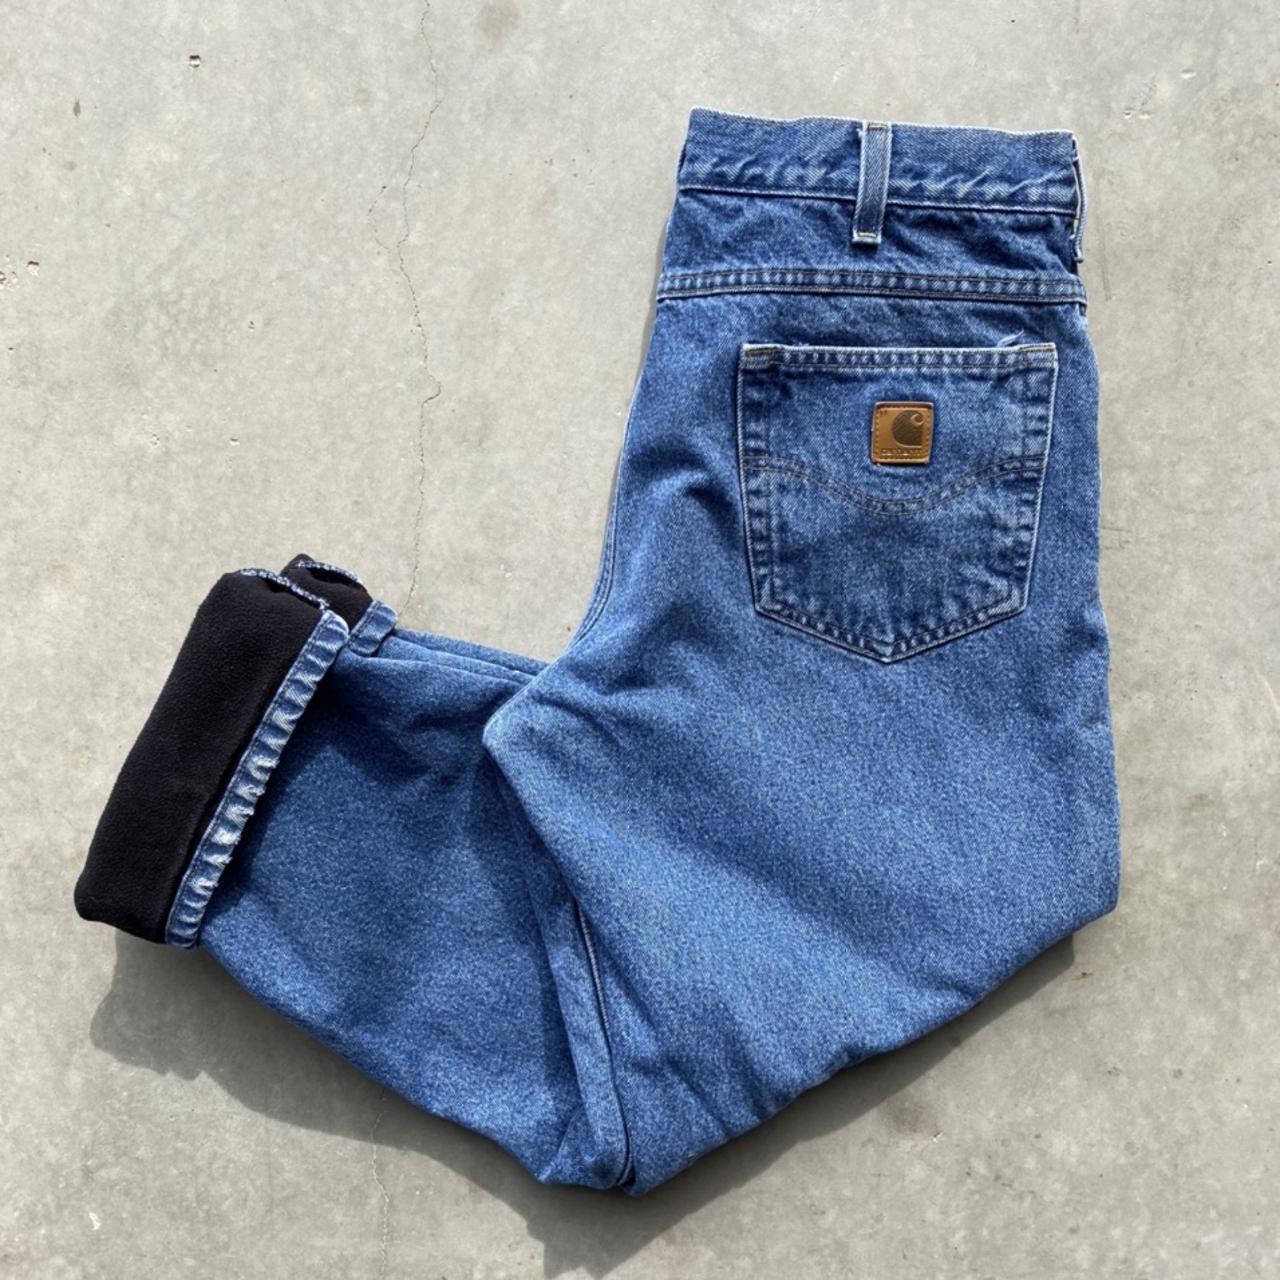 Vintage Carhartt Blue jeans blanket lined for extra... - Depop